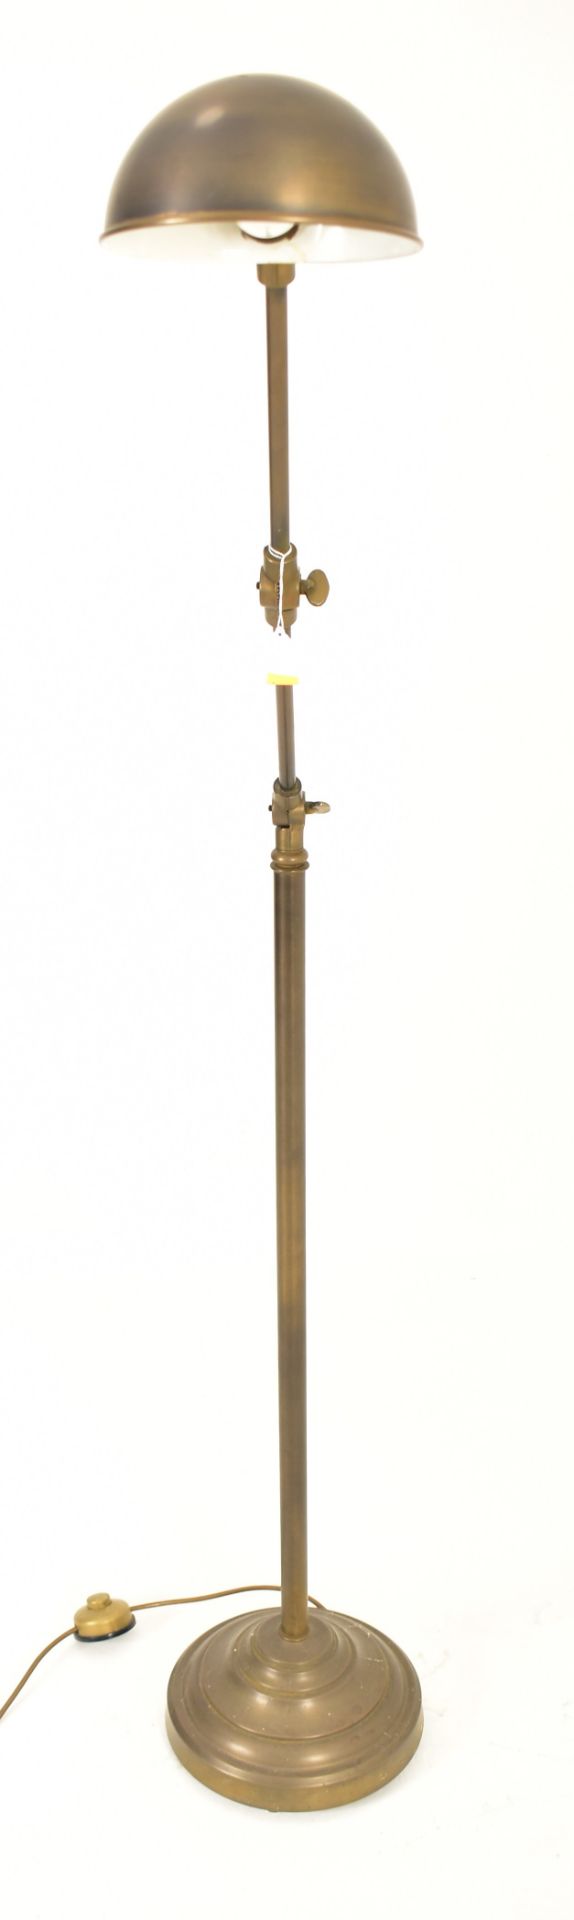 20TH CENTURY BRASSED METAL INDUSTRIAL STYLE FLOOR LAMP - Image 6 of 6